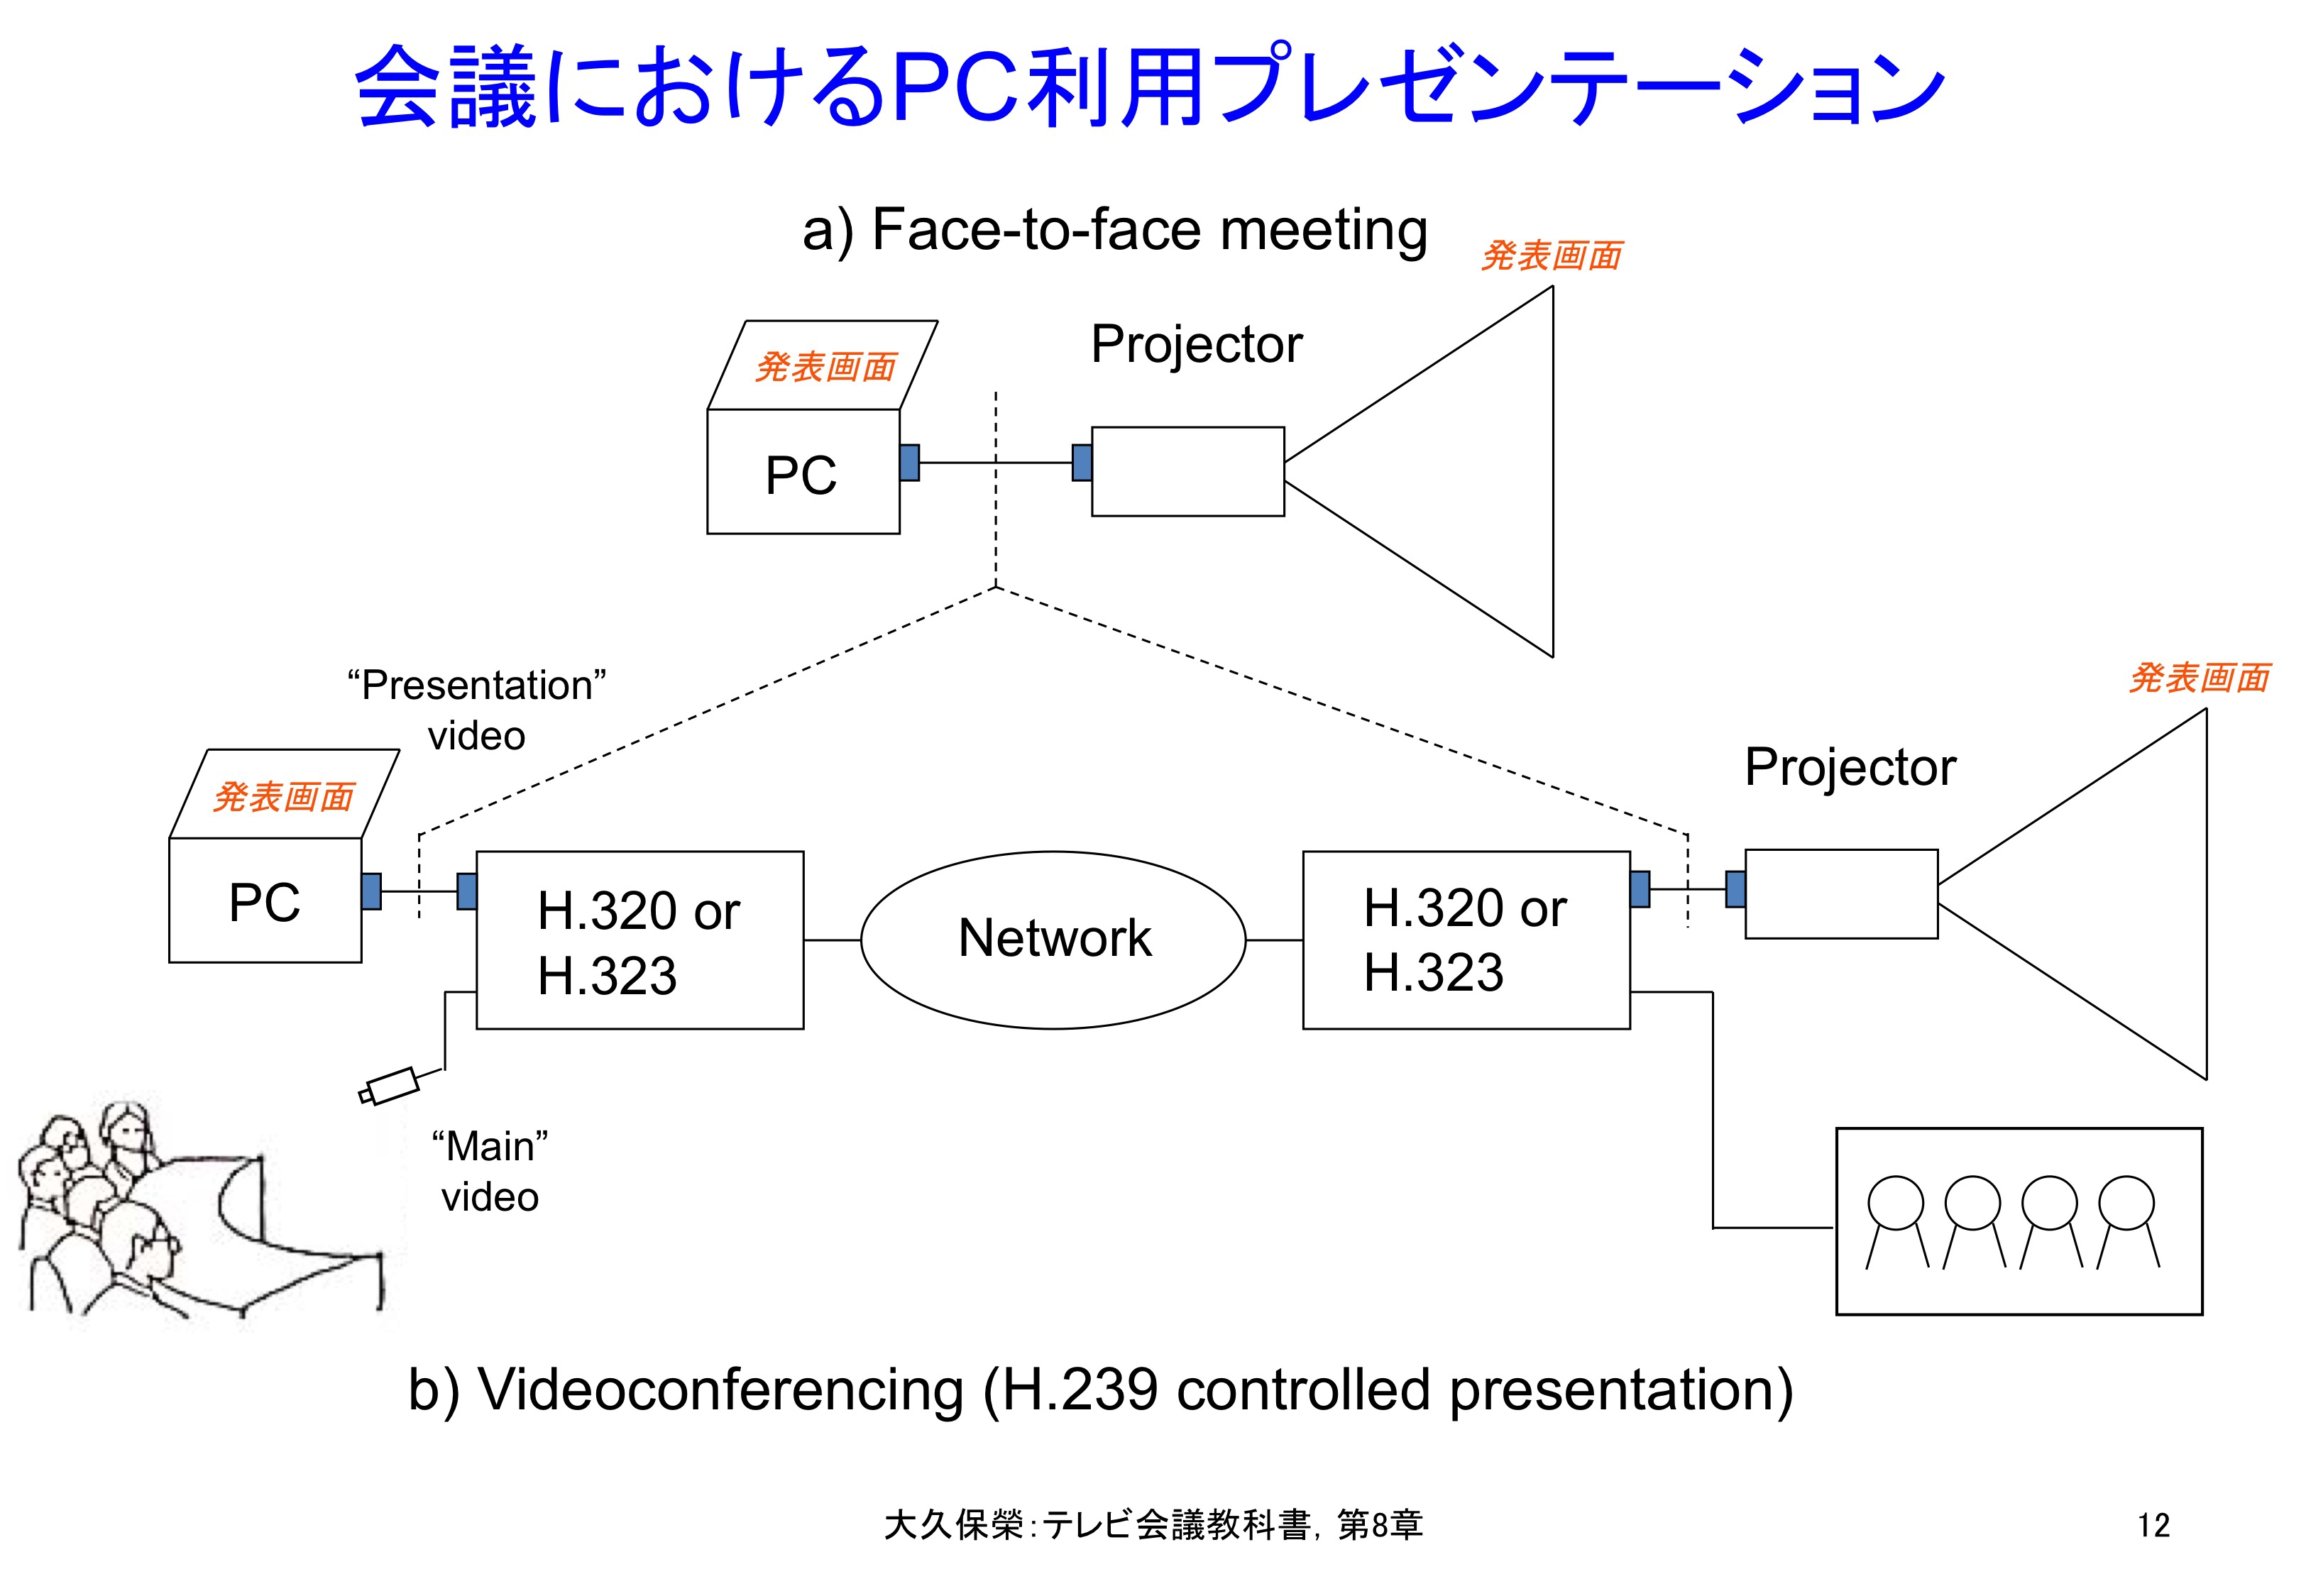 図8-12 会議におけるPC利用プレゼンテーション